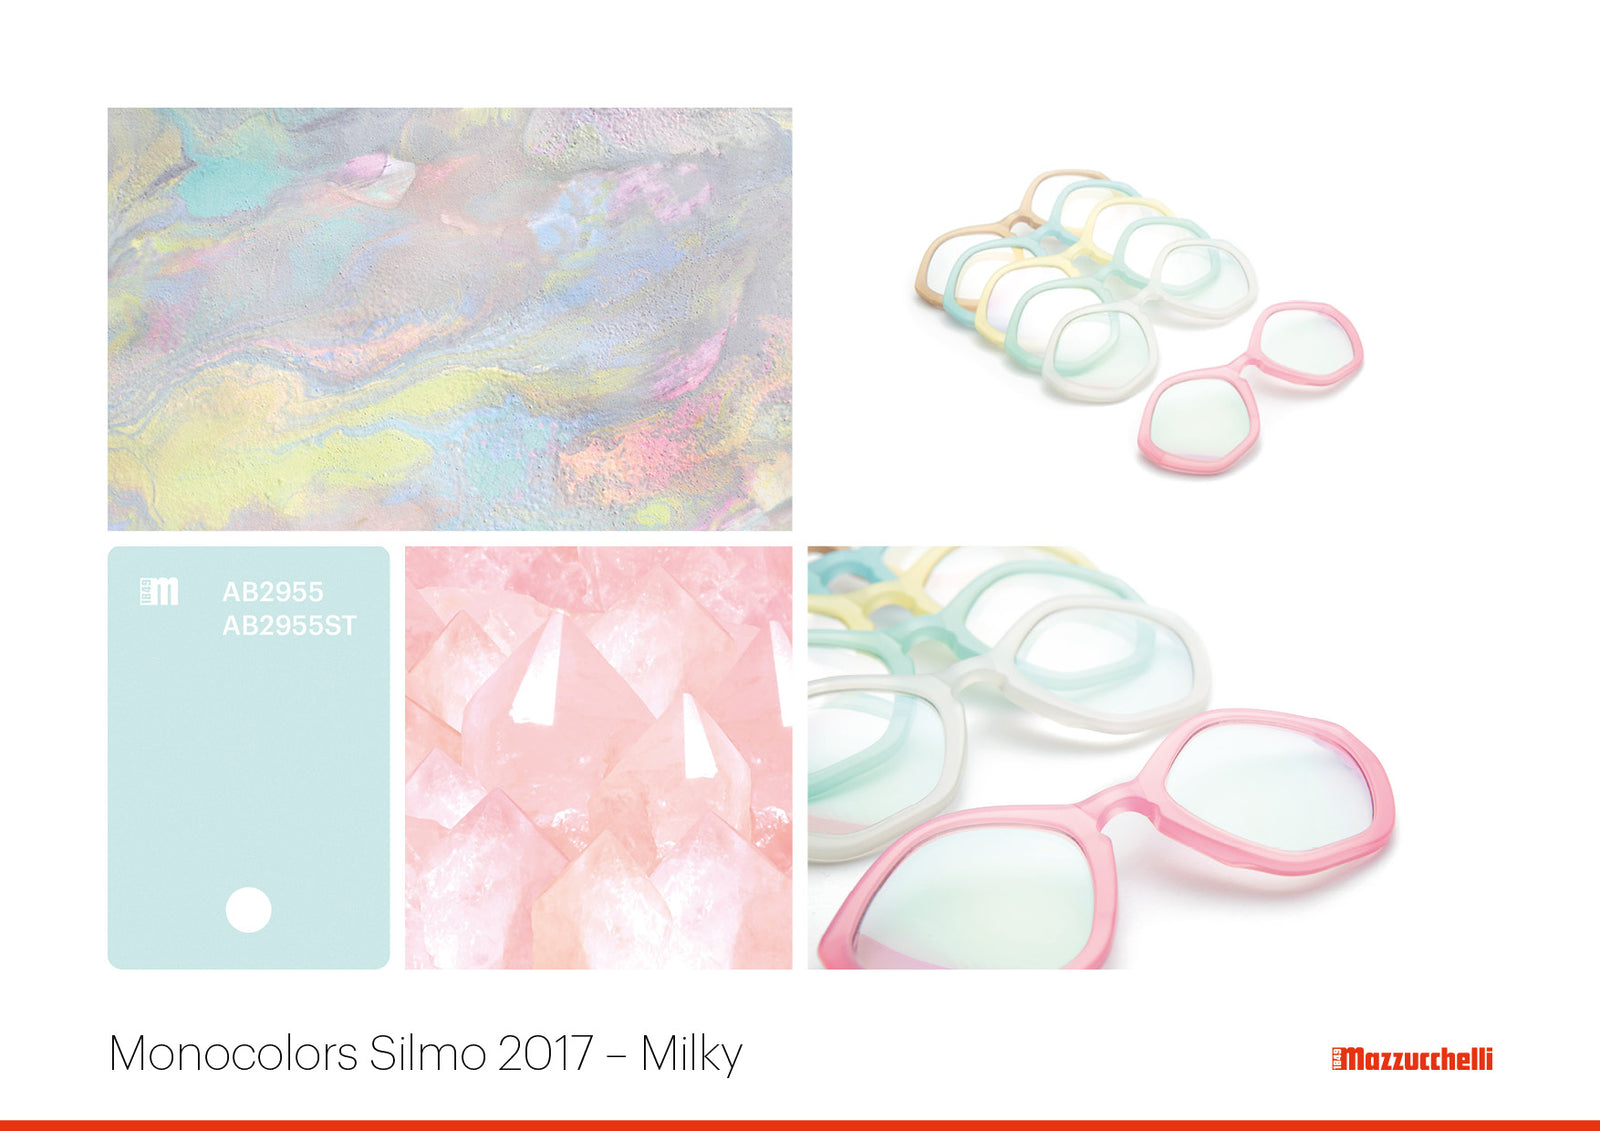 Monocolors Silmo 2017 Milky | Mazzucchelli 1849